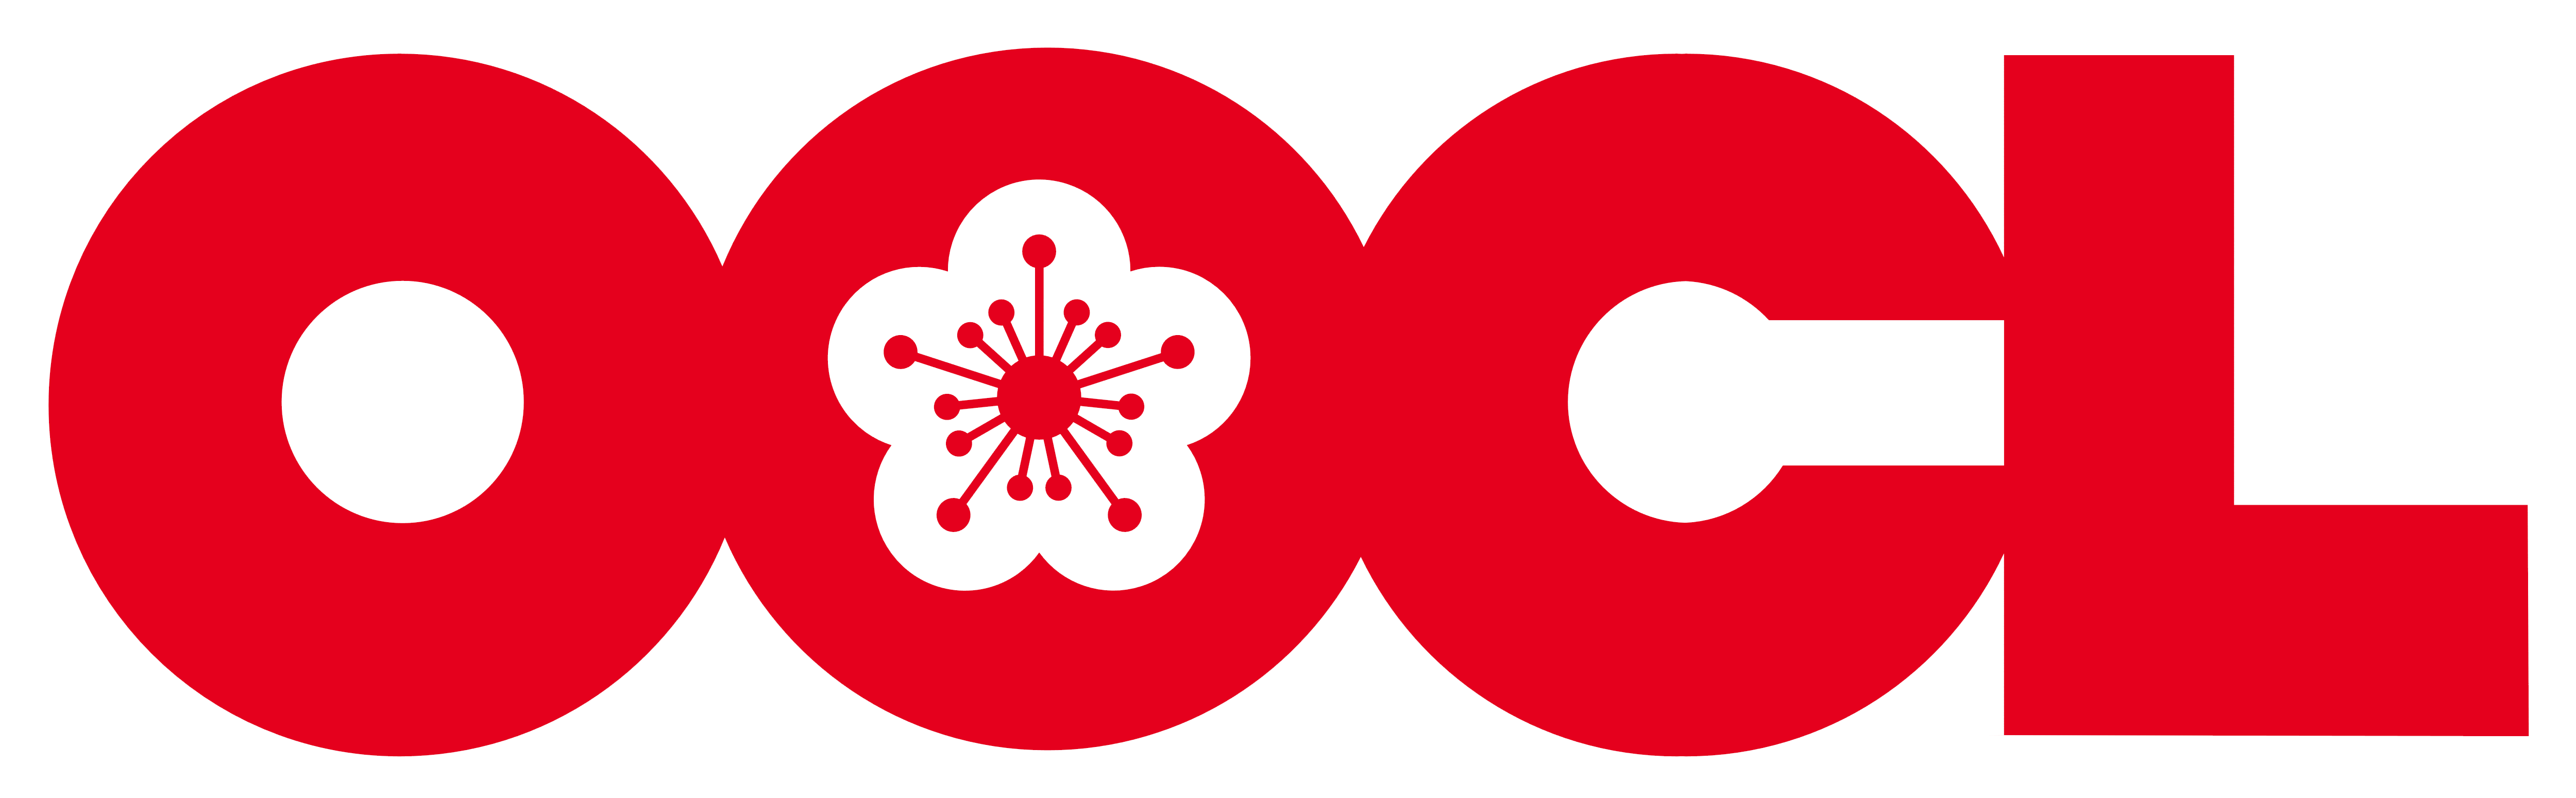 OOCL_logo_logotype_emblem